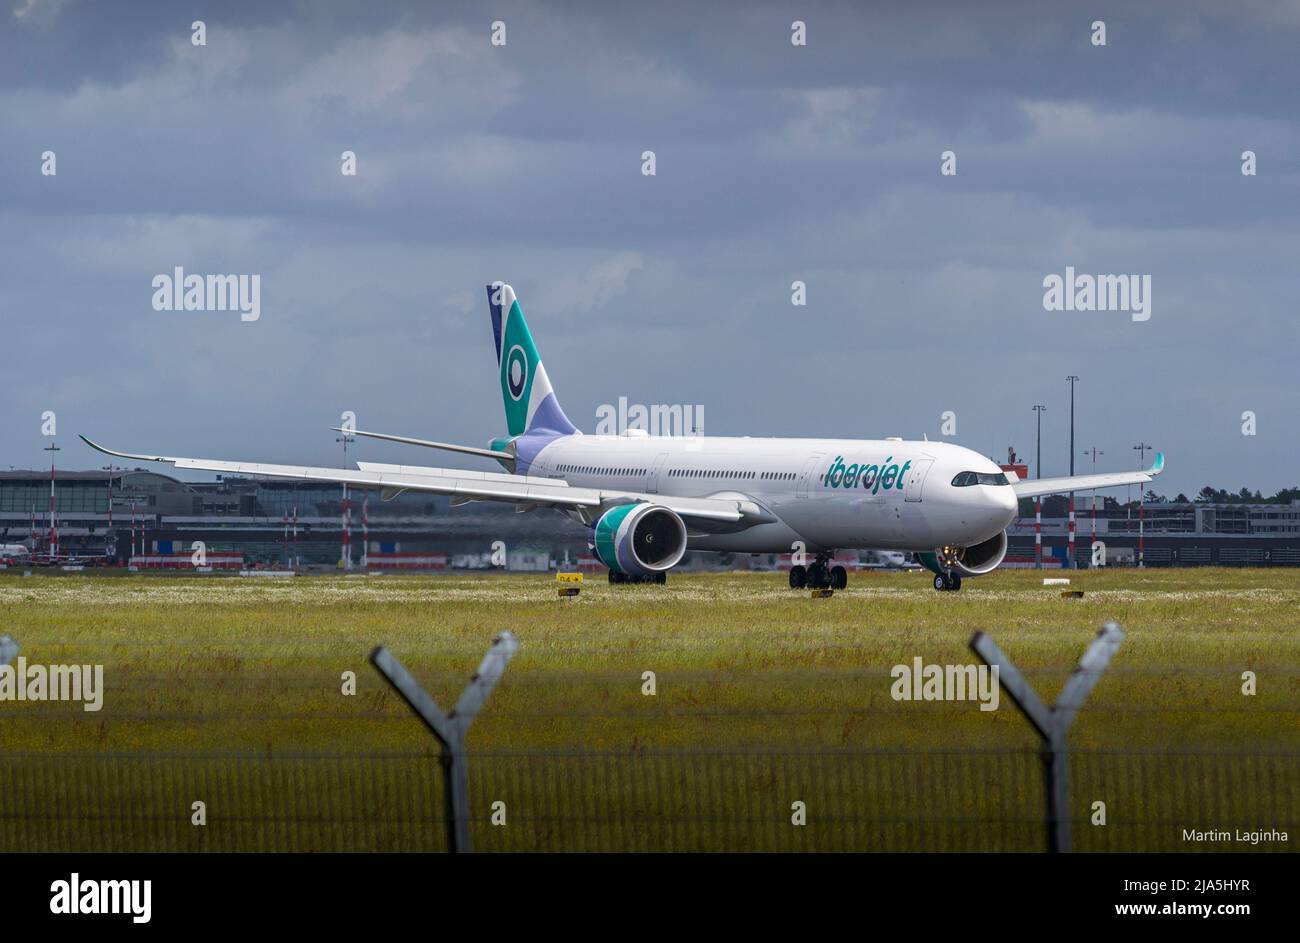 A330-900 neo landing at Hamburg airport Stock Photo